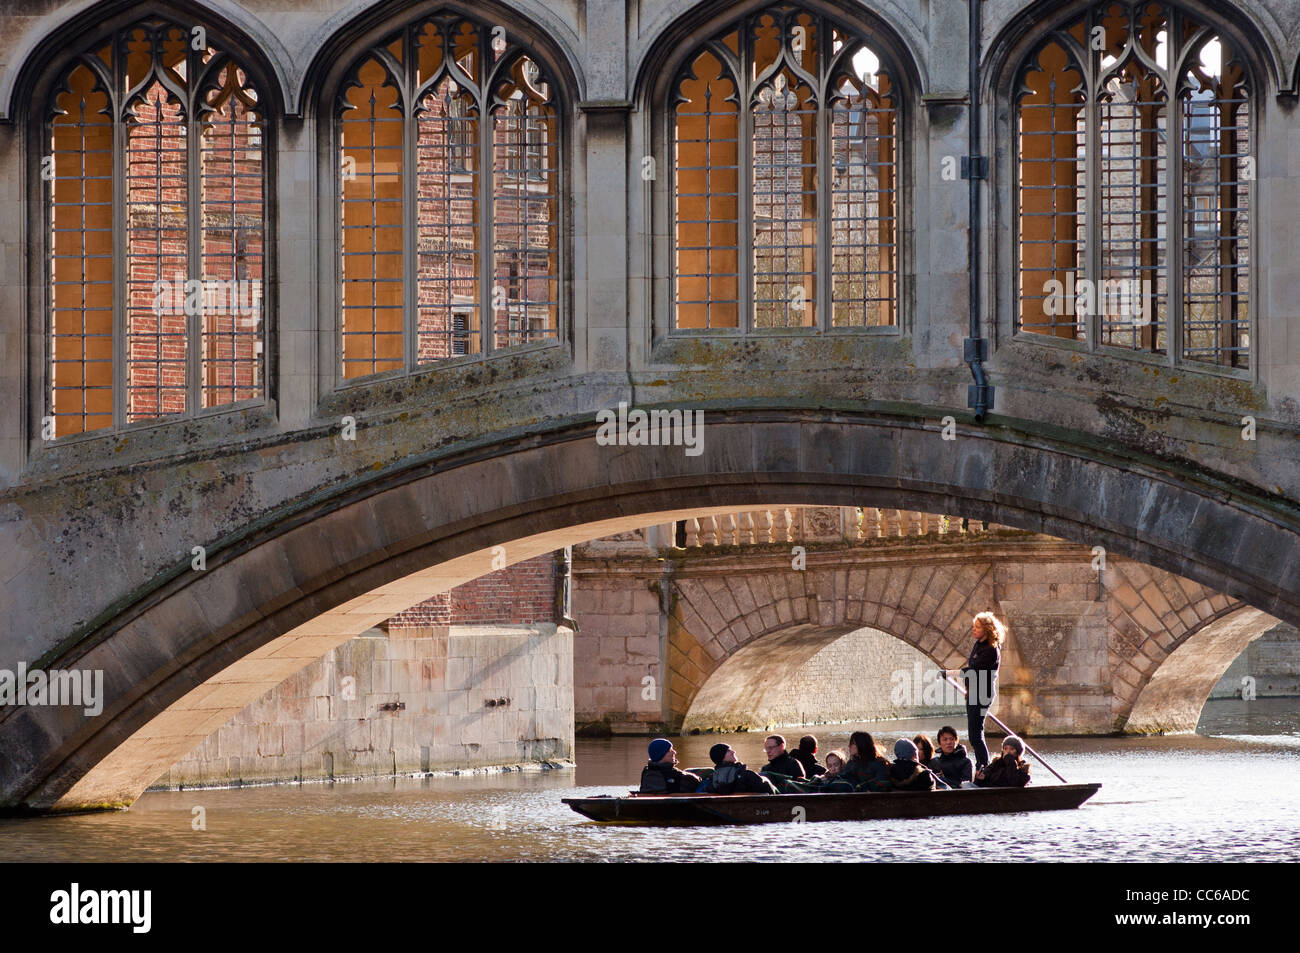 Navegar bajo el Puente de los suspiros en St Johns College, Universidad de Cambridge, Inglaterra. Foto de stock